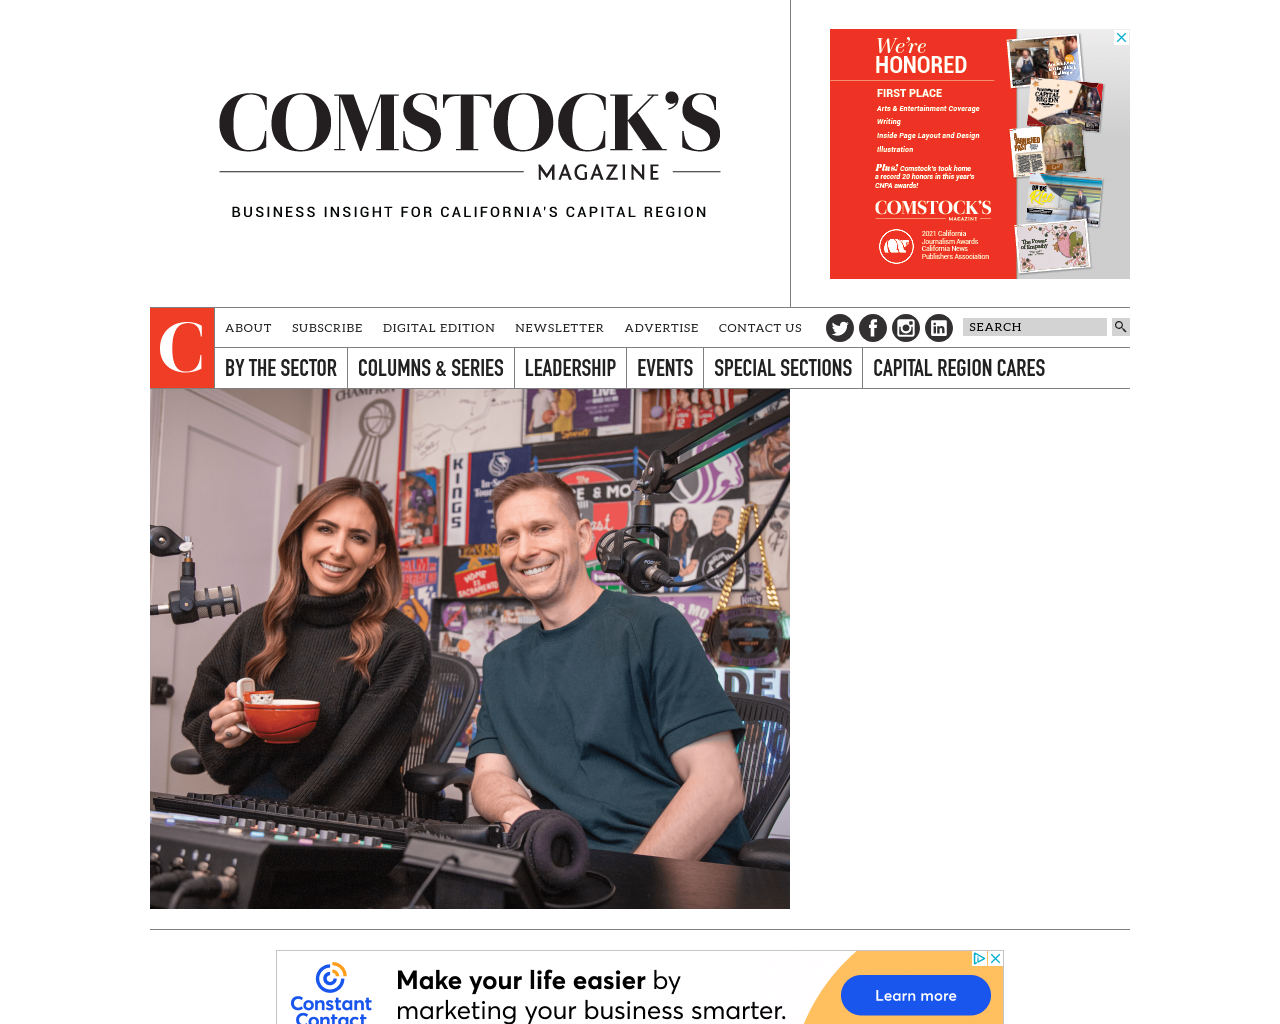 comstocksmag.com